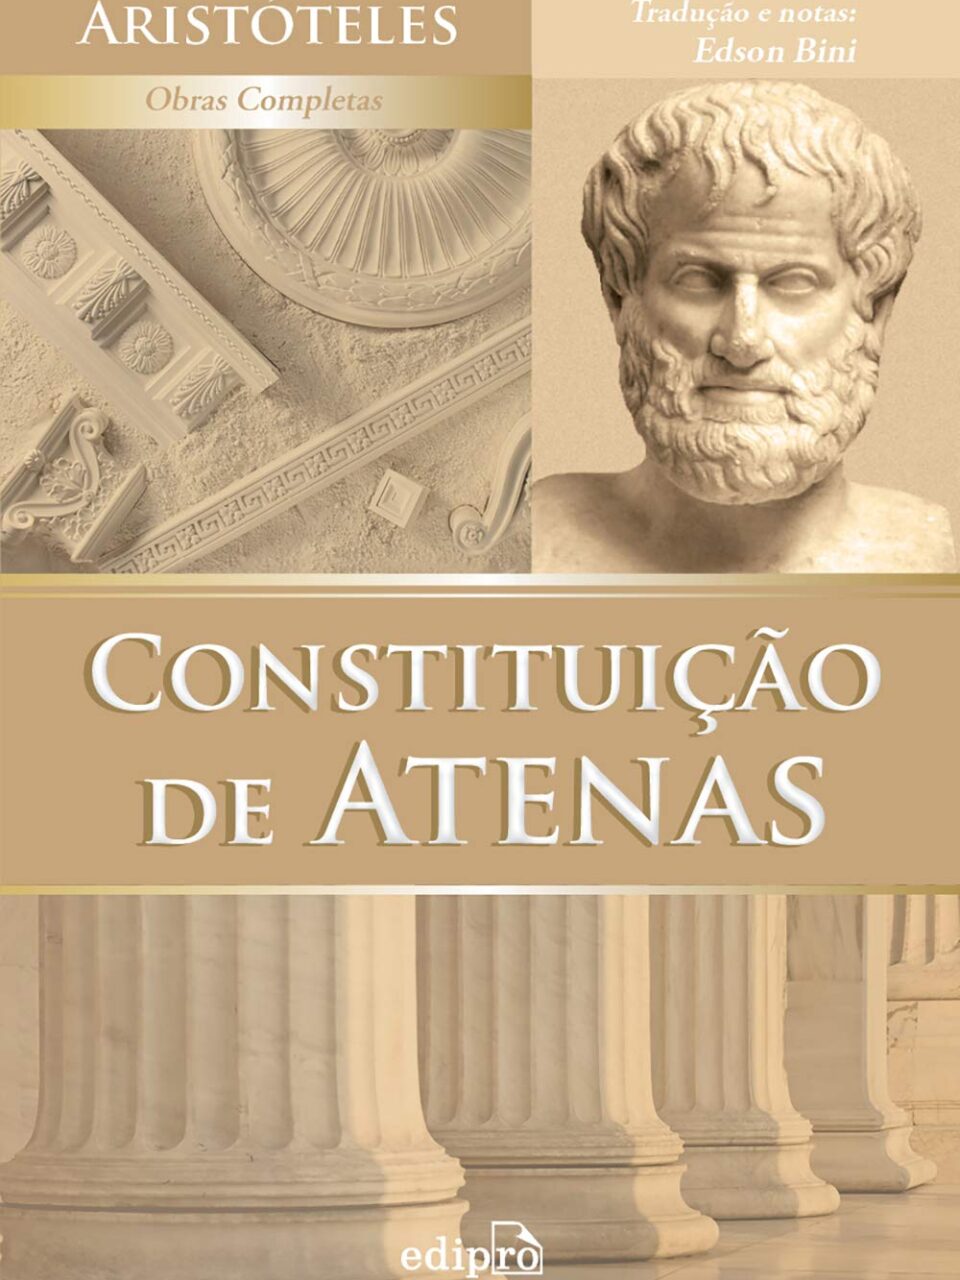 Constituição de Atenas - Aristóteles